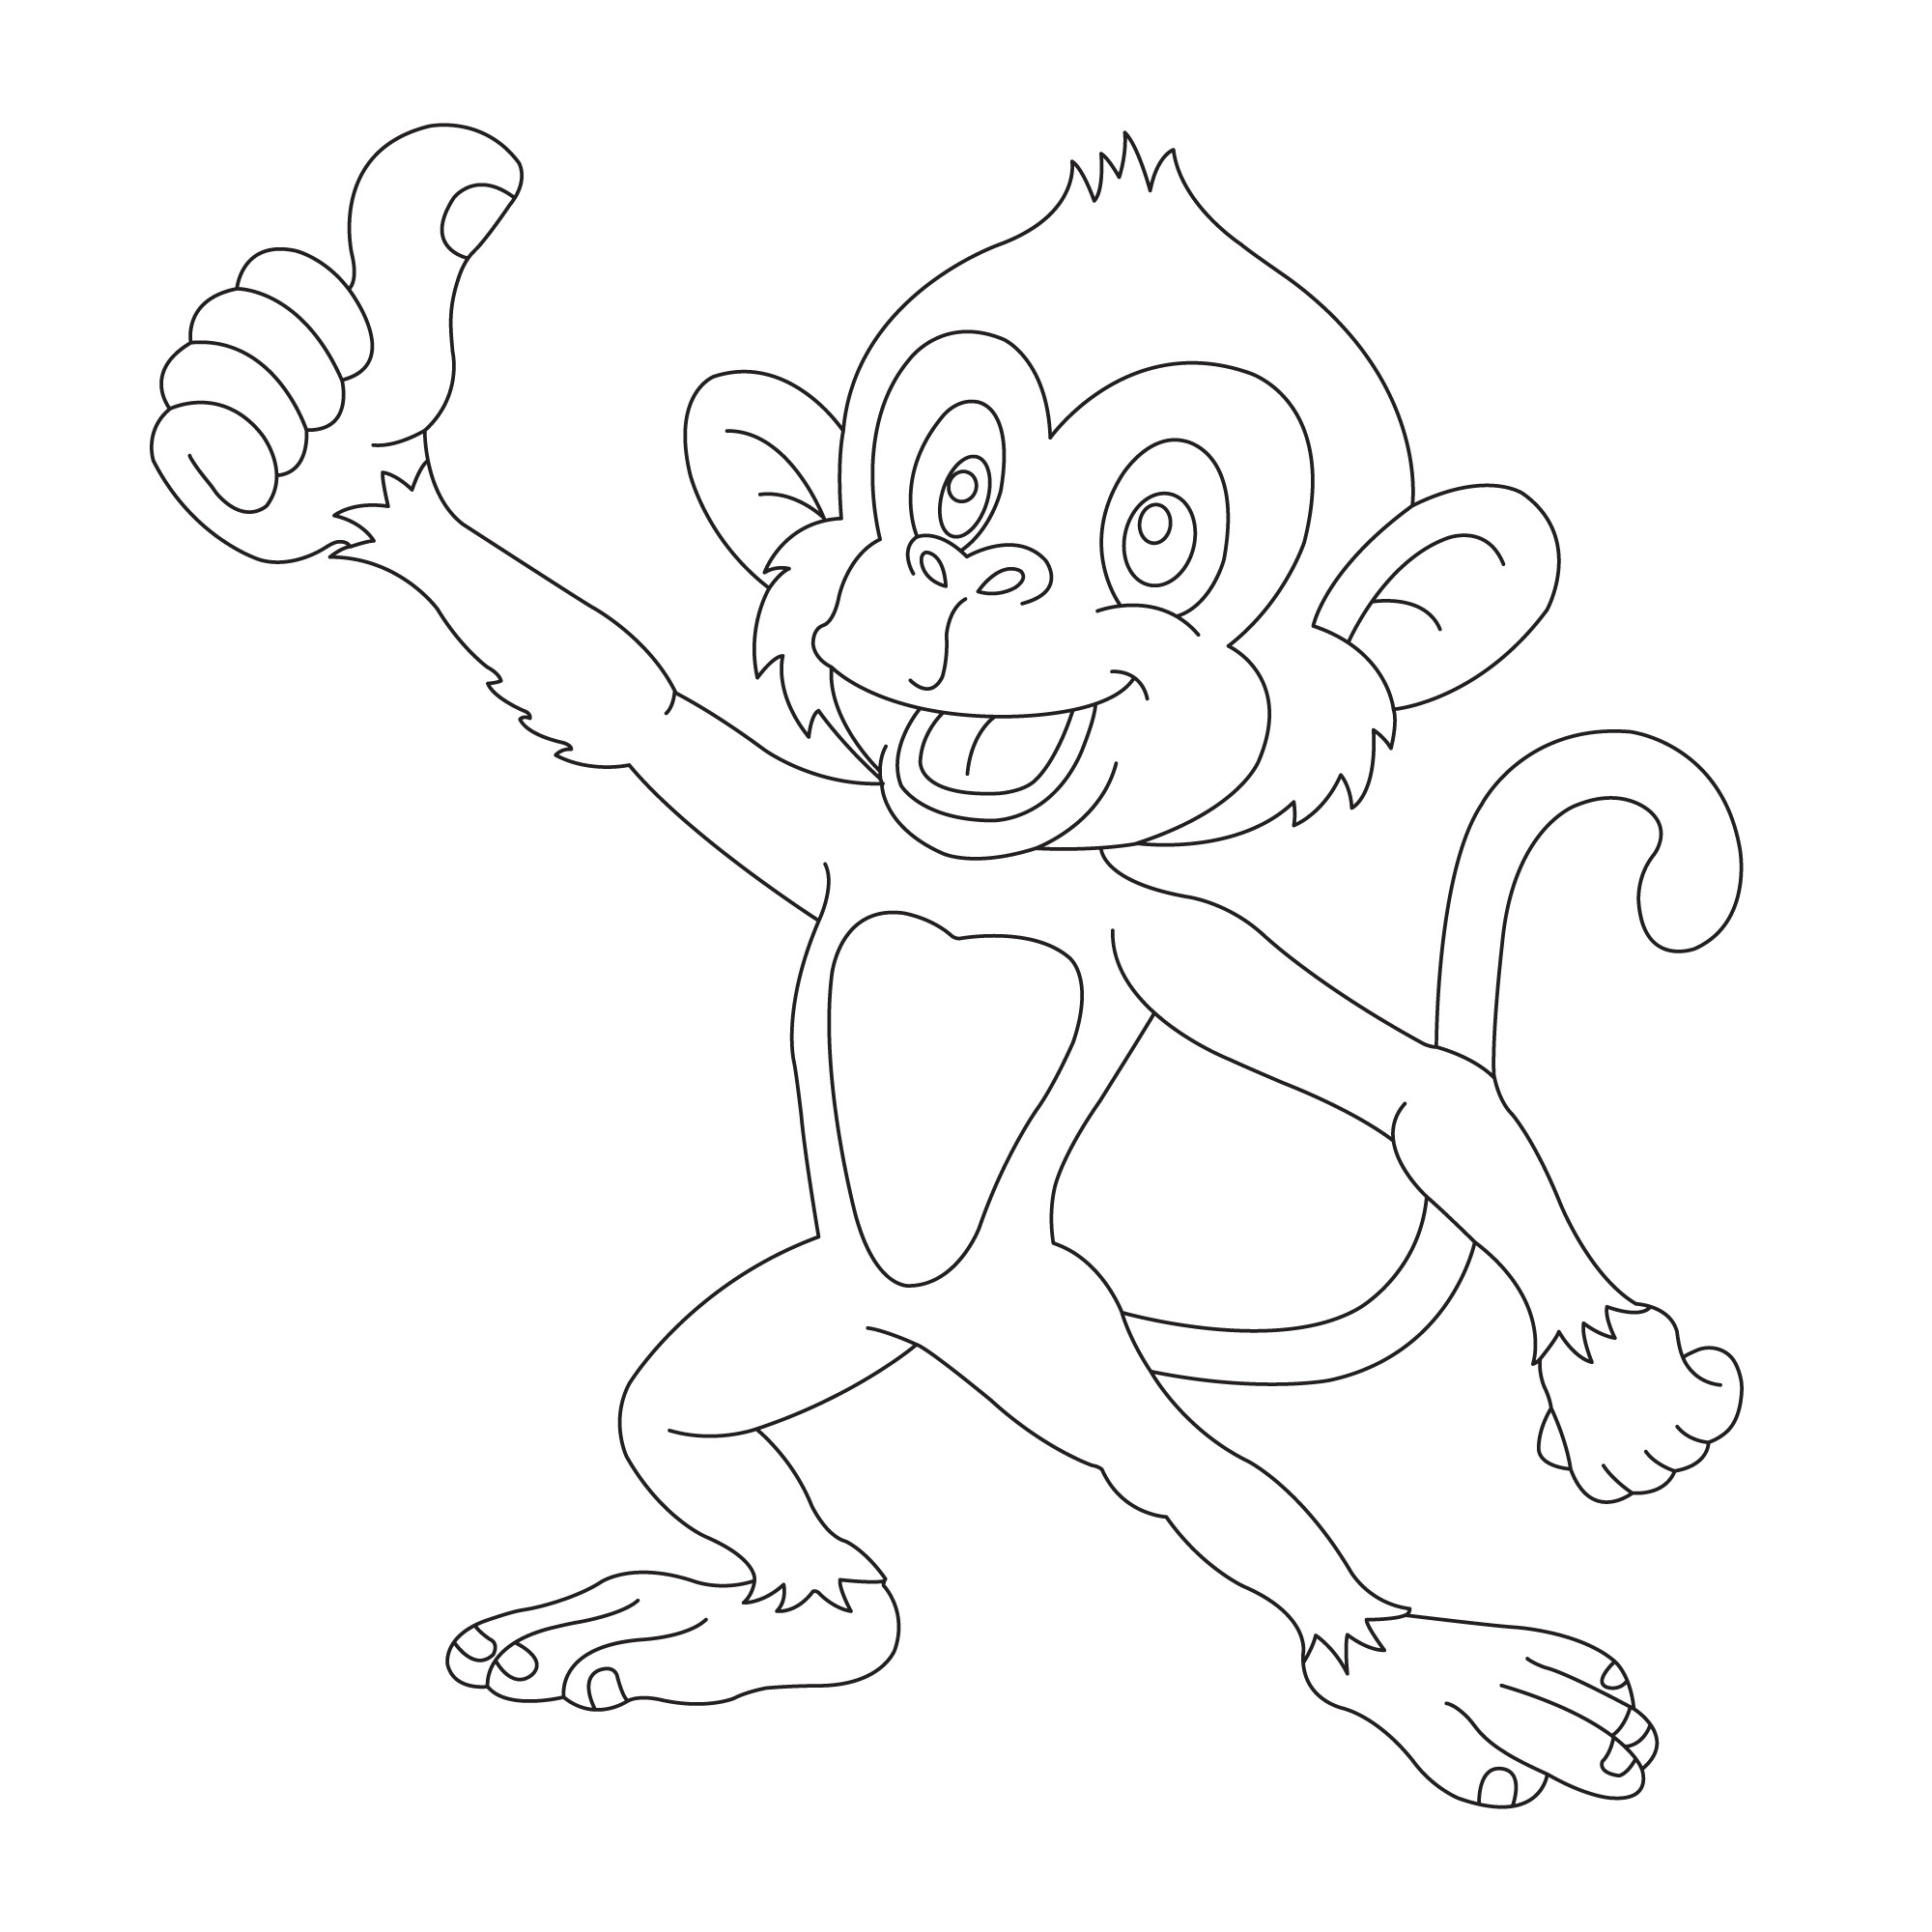 Раскраска для детей: забавная обезьяна показывает рукой большой палец